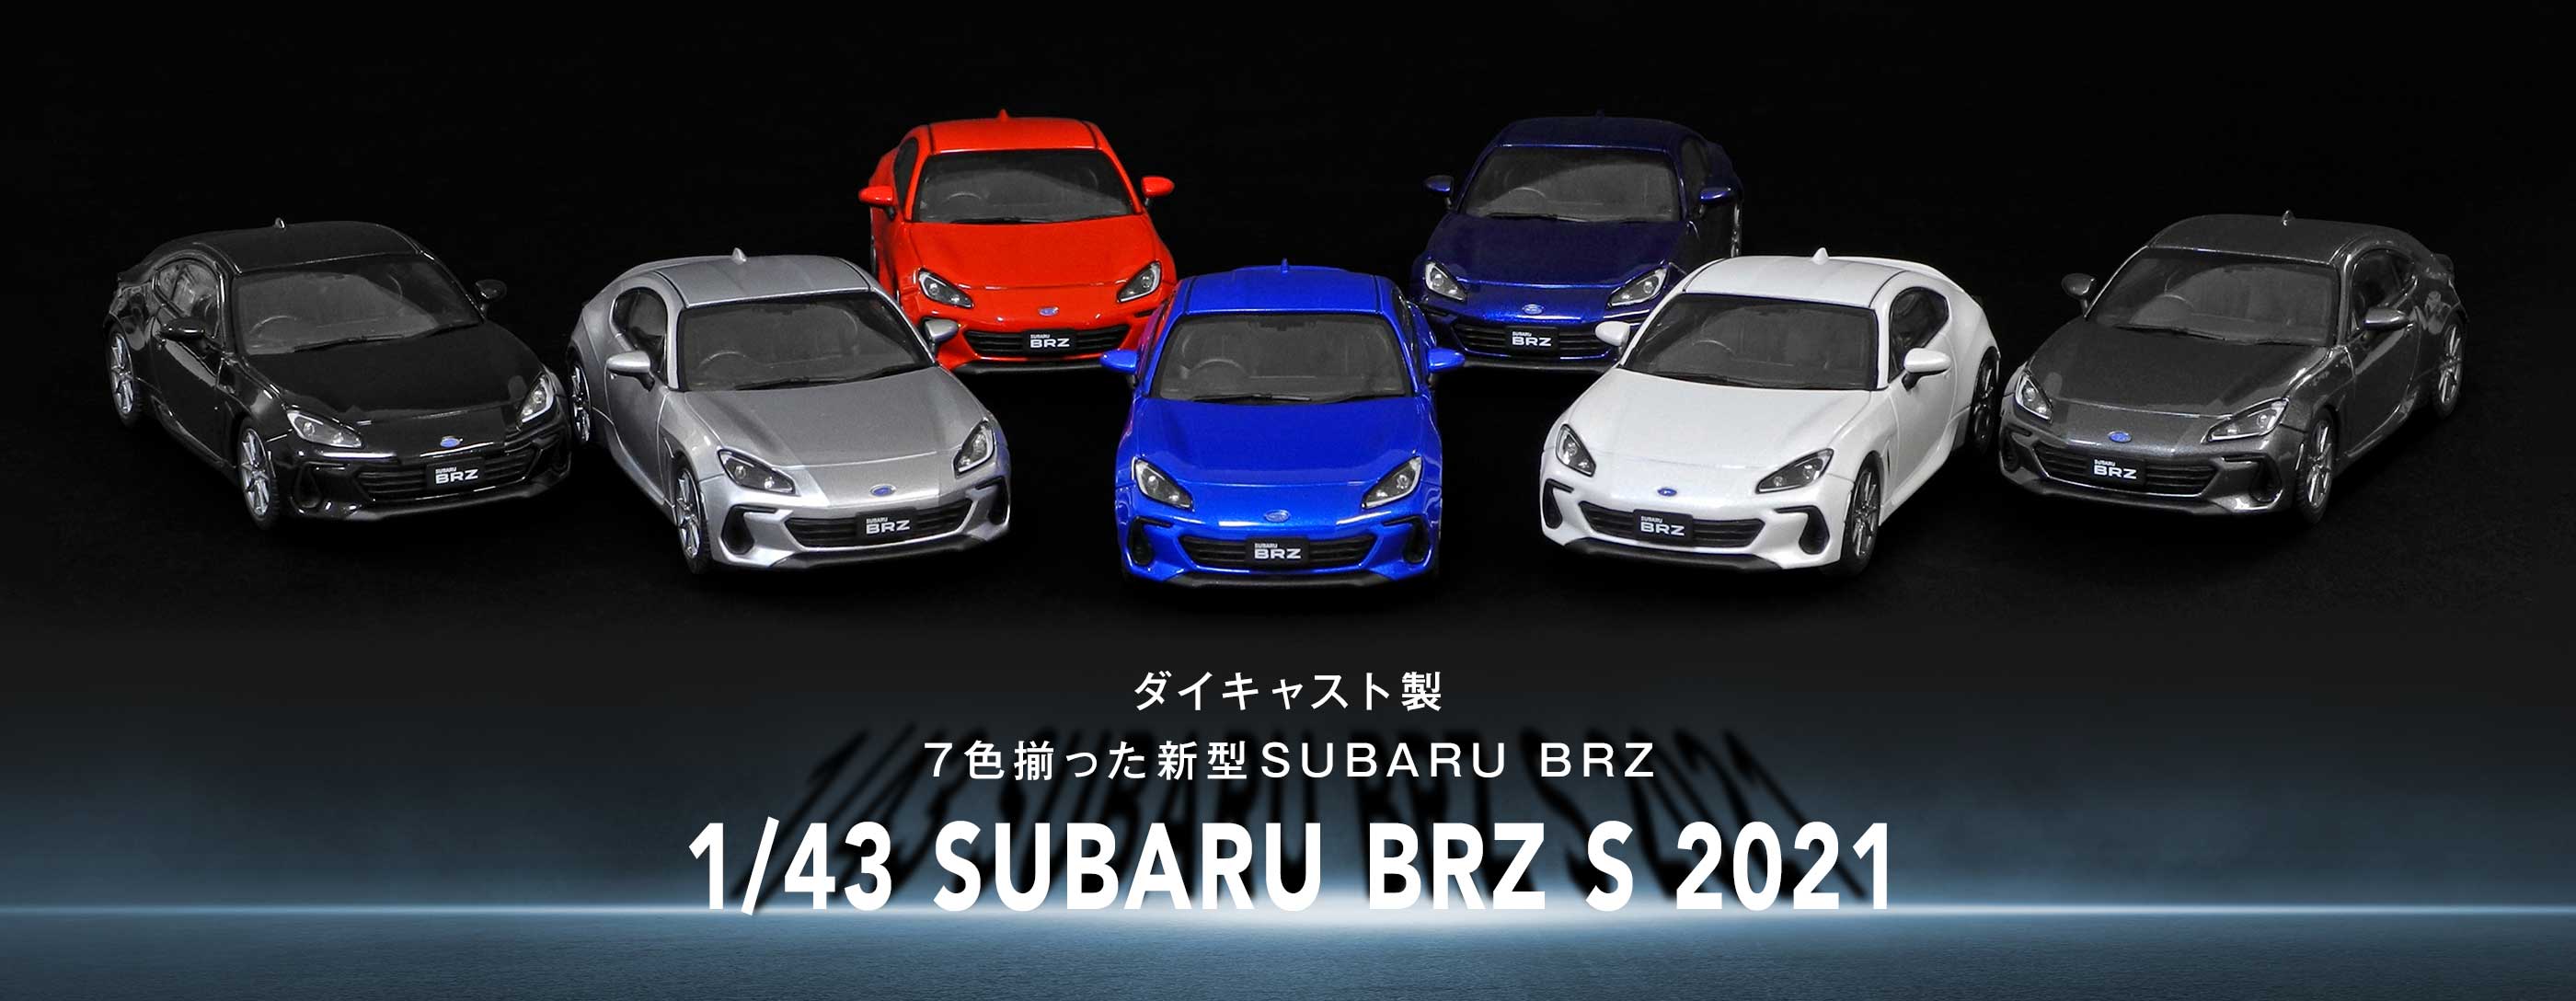 「1/43 SUBARU BRZ S 2021」が7色揃って新登場